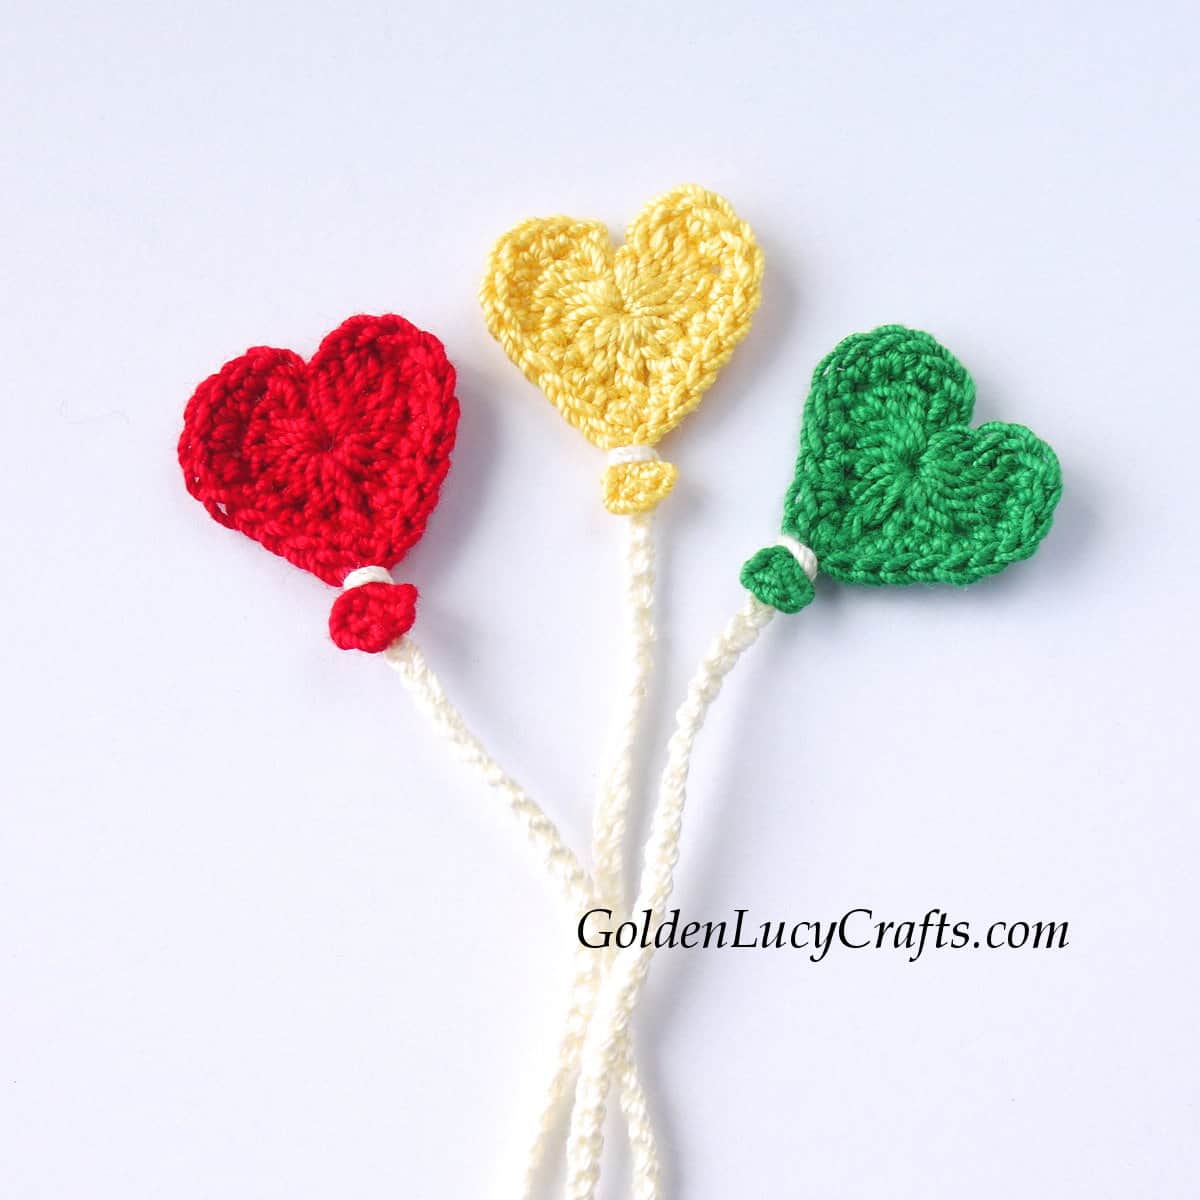 Three crochet heart-shaped balloons.